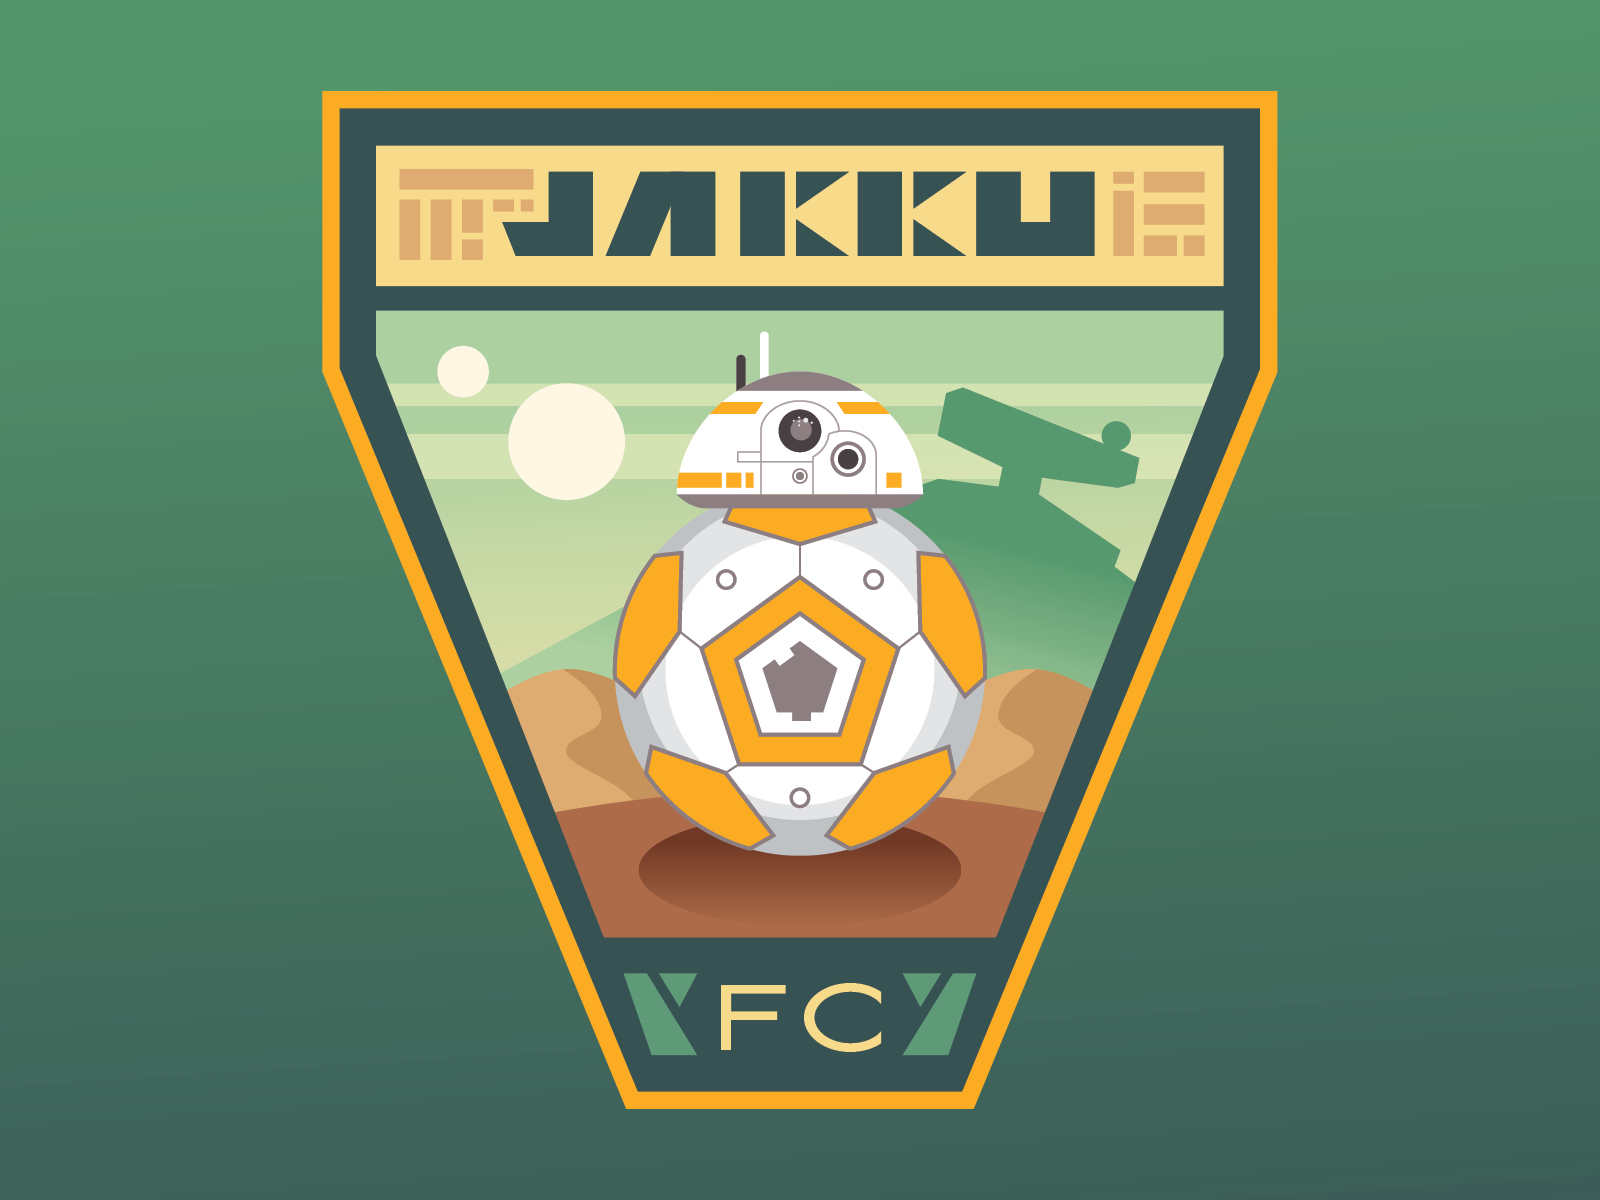 Jakku FC Crest bb8 crest digital football illustration jakku soccer sports sports logo star wars vector